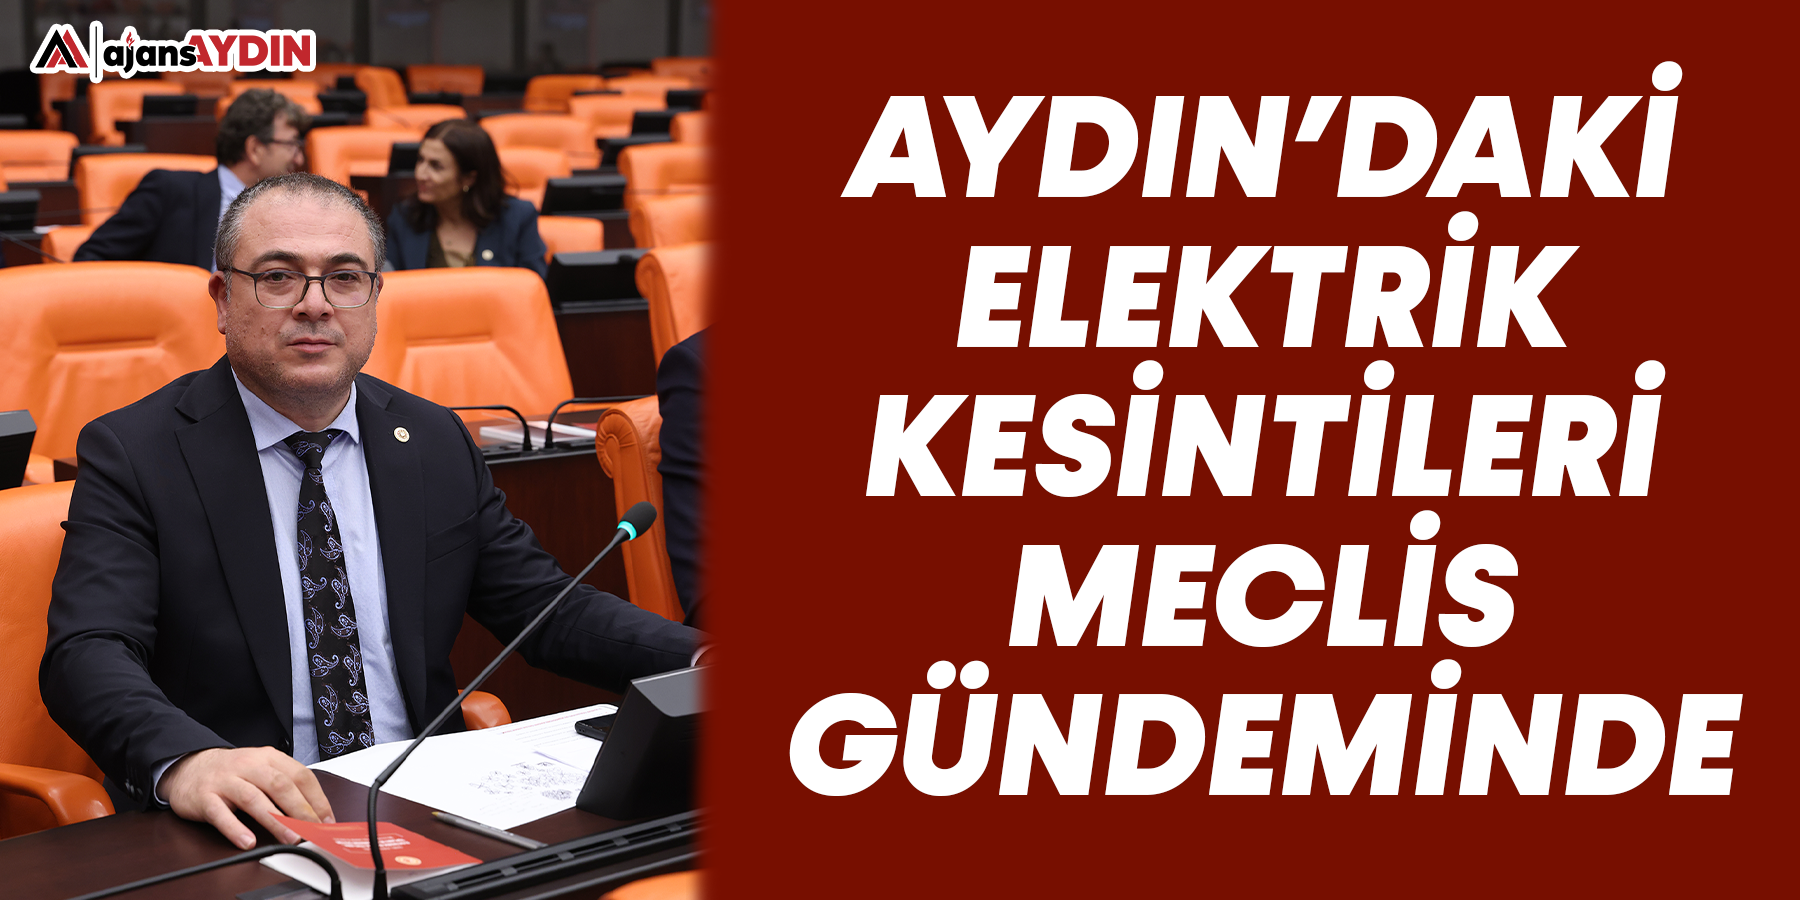 Aydın'daki elektrik kesintileri meclis gündeminde